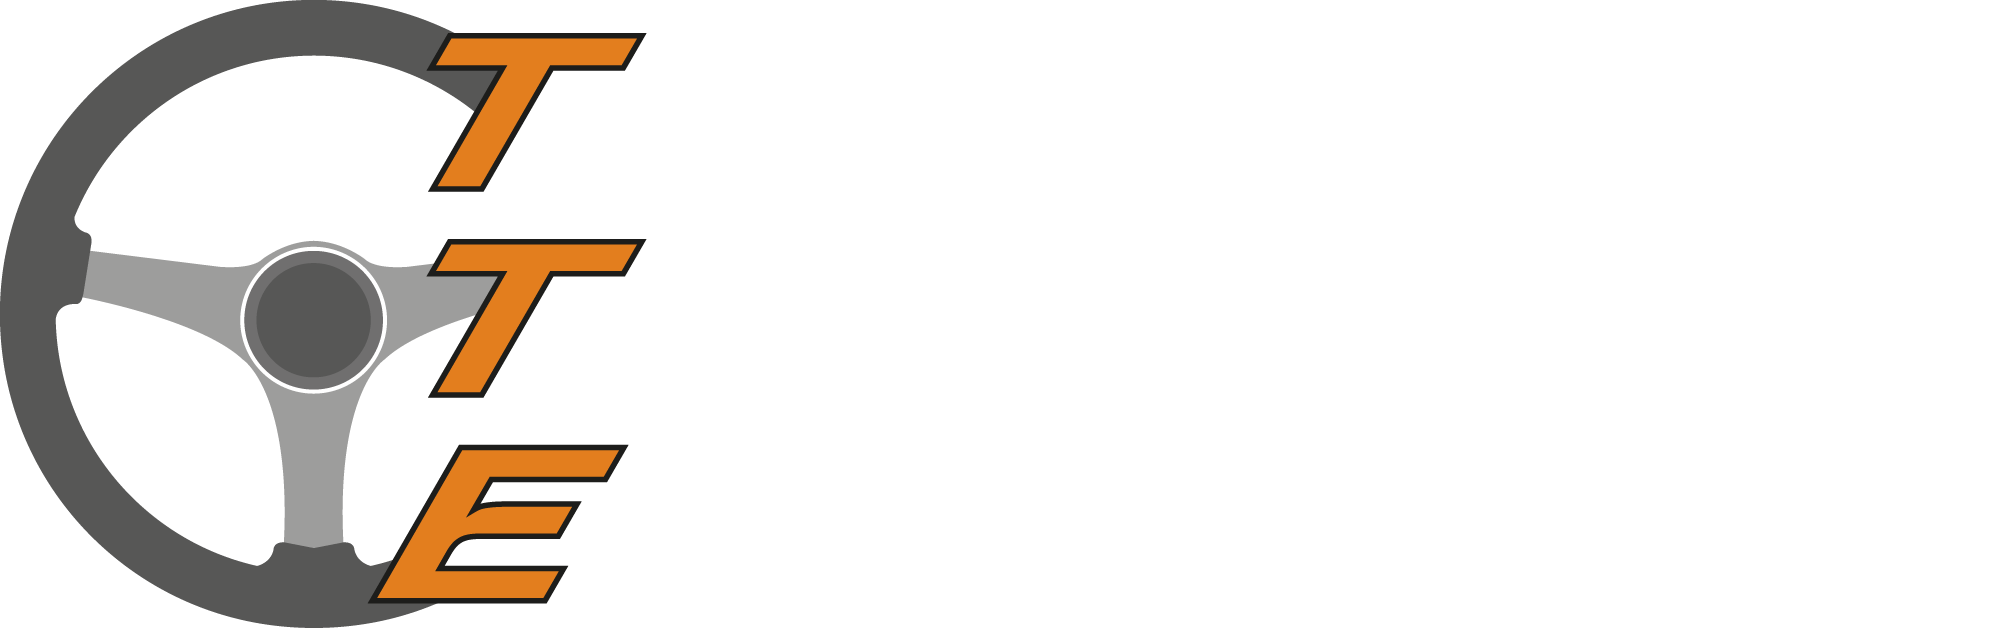 Trophée_Tourisme_Endurance_course_automobile_Le_Mans_Sarthe